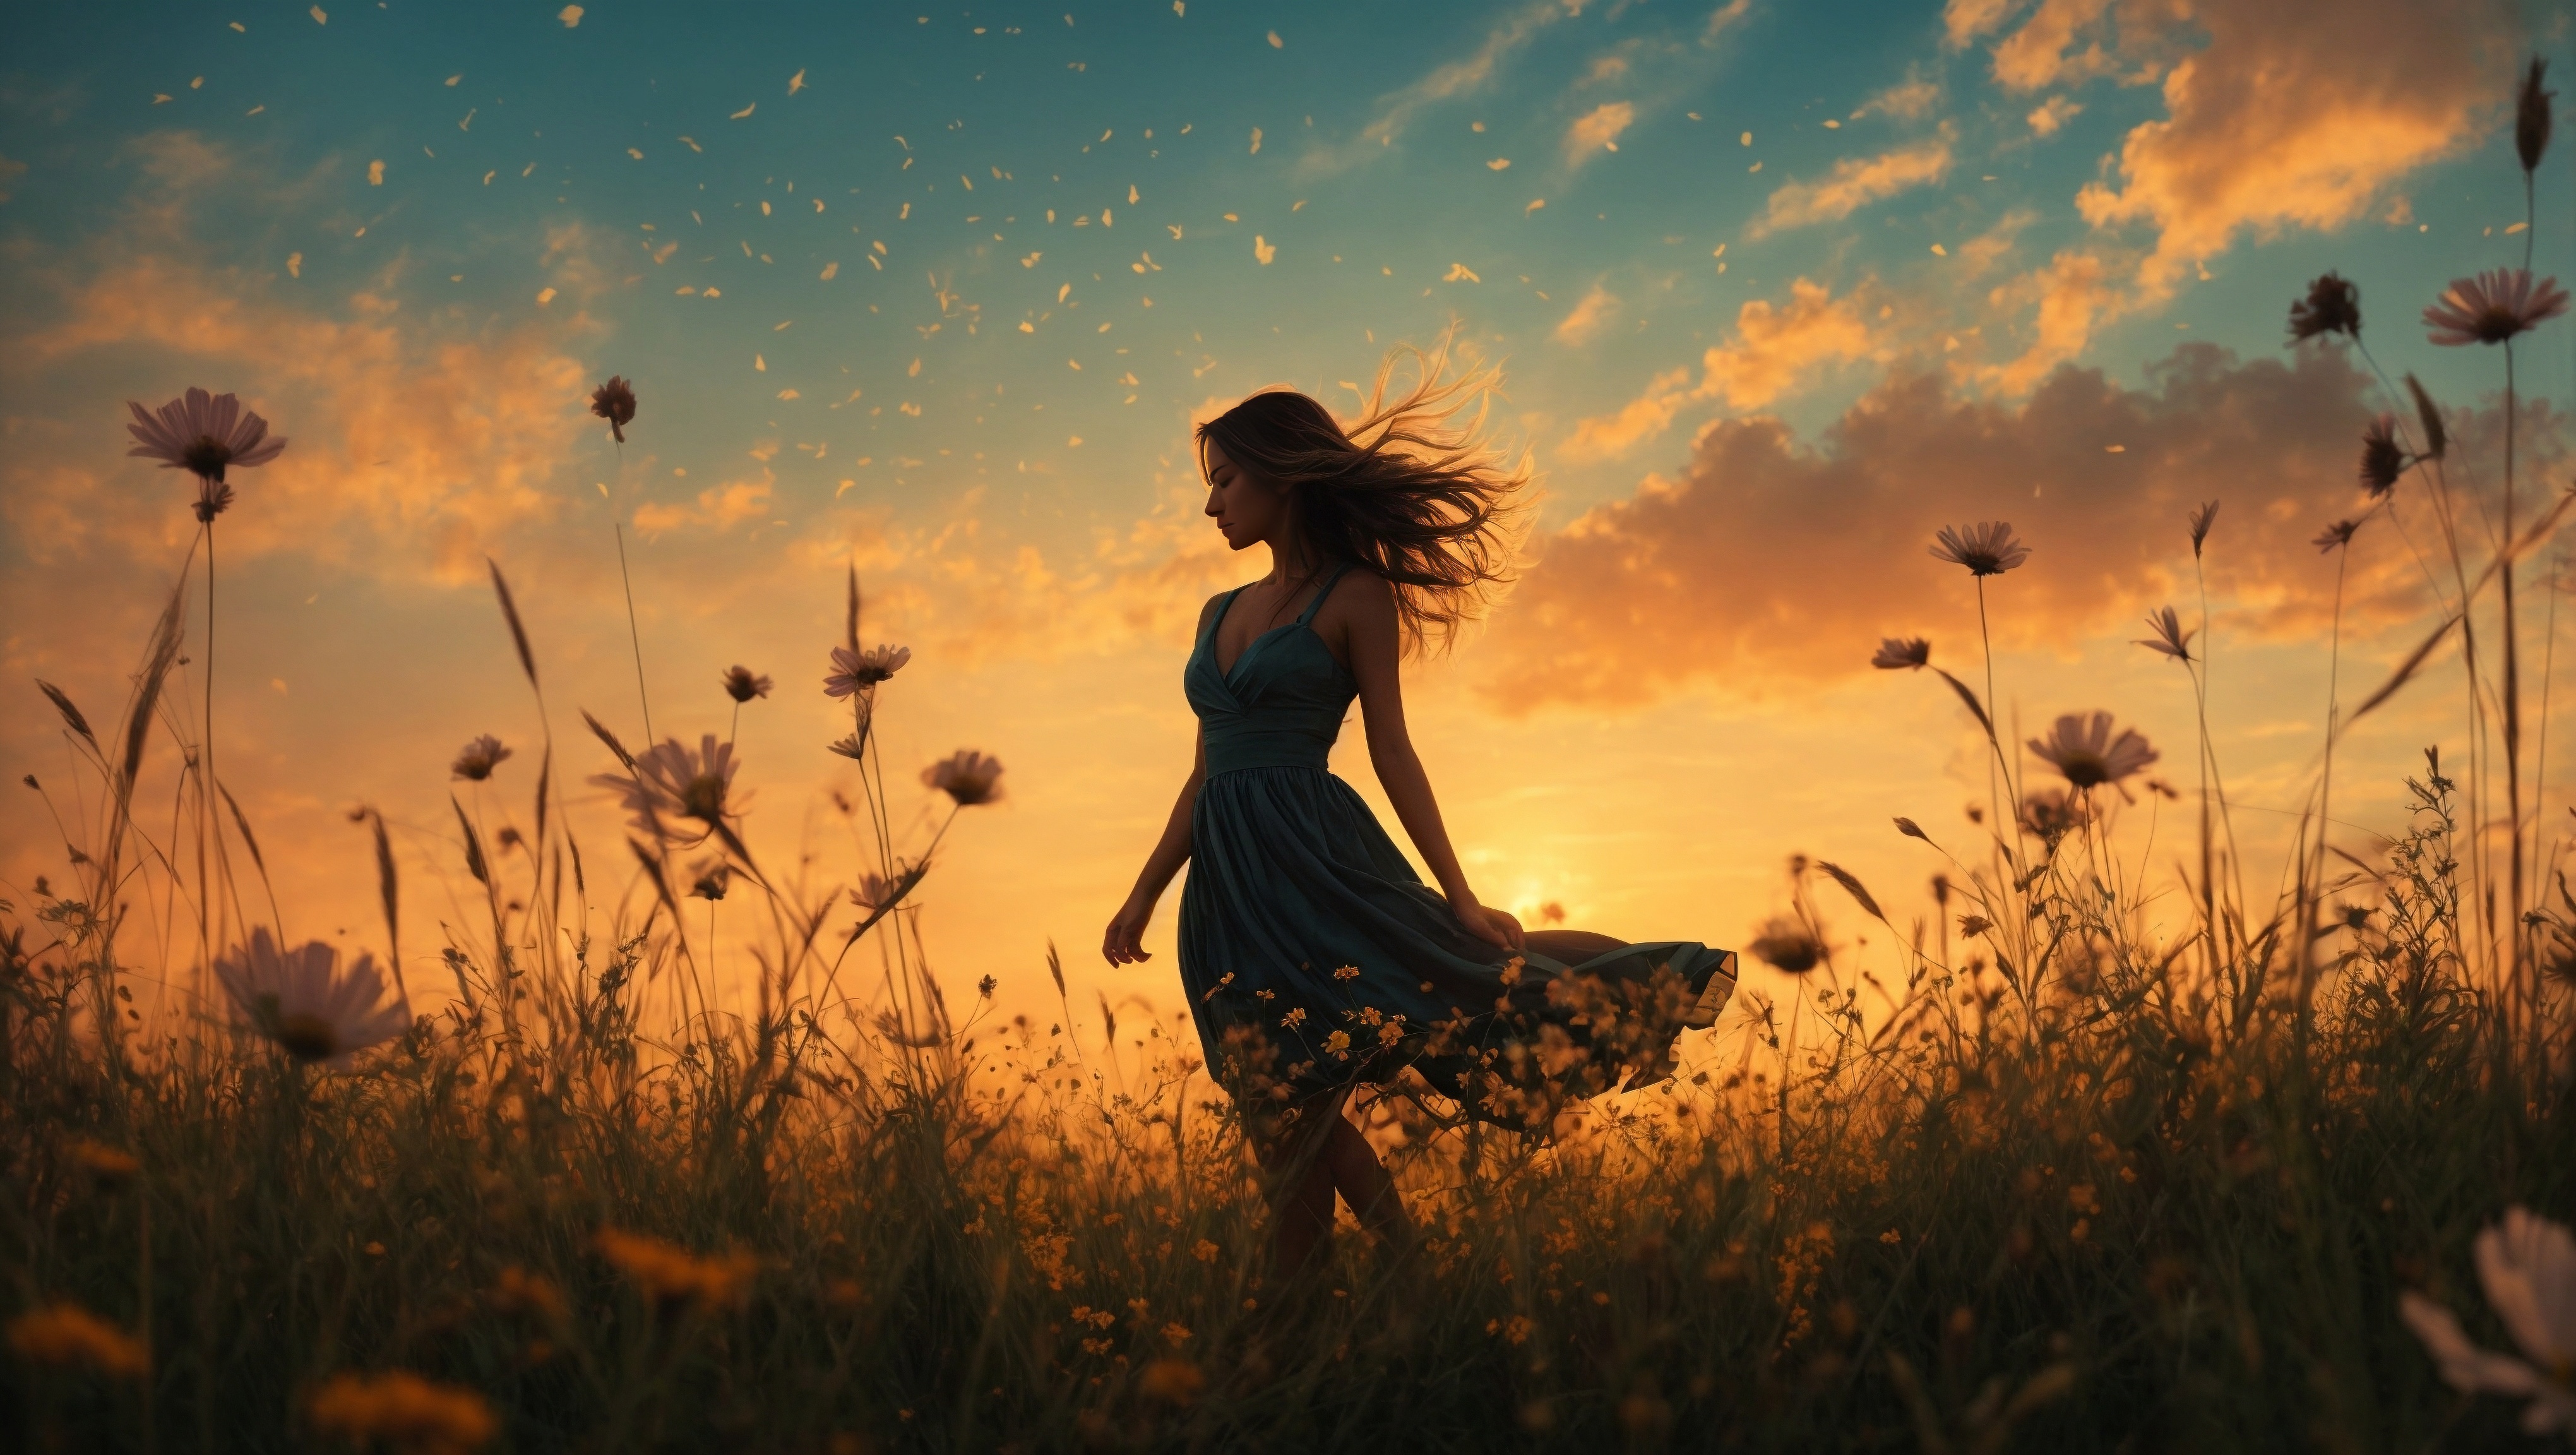 Бесплатное фото Девушка идет по полю на фоне заходящего солнца